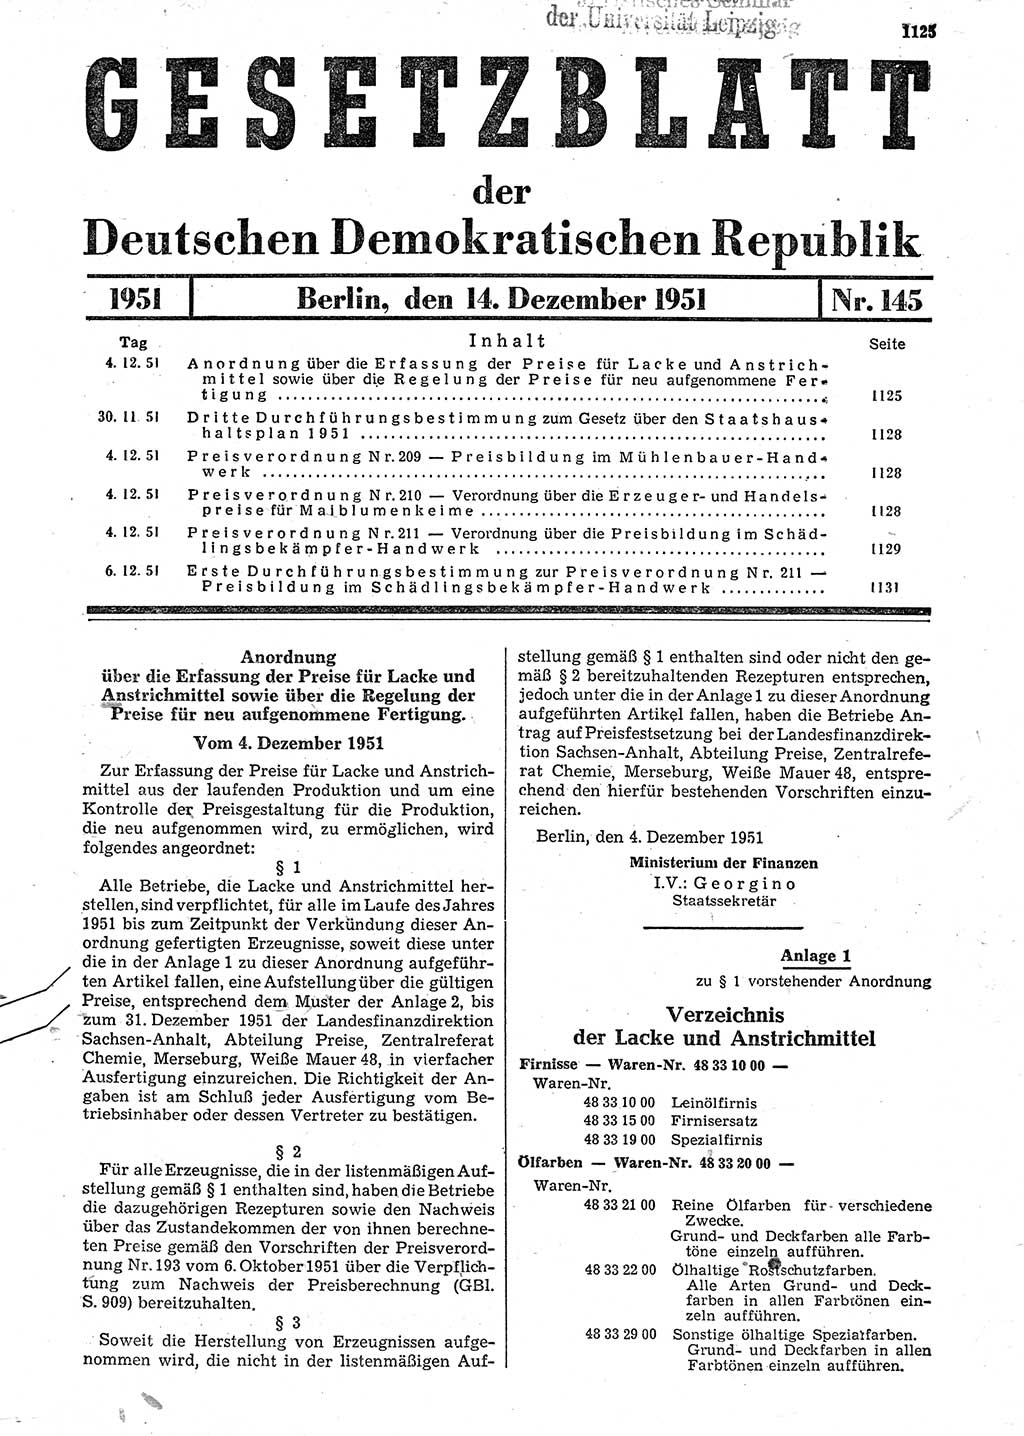 Gesetzblatt (GBl.) der Deutschen Demokratischen Republik (DDR) 1951, Seite 1125 (GBl. DDR 1951, S. 1125)